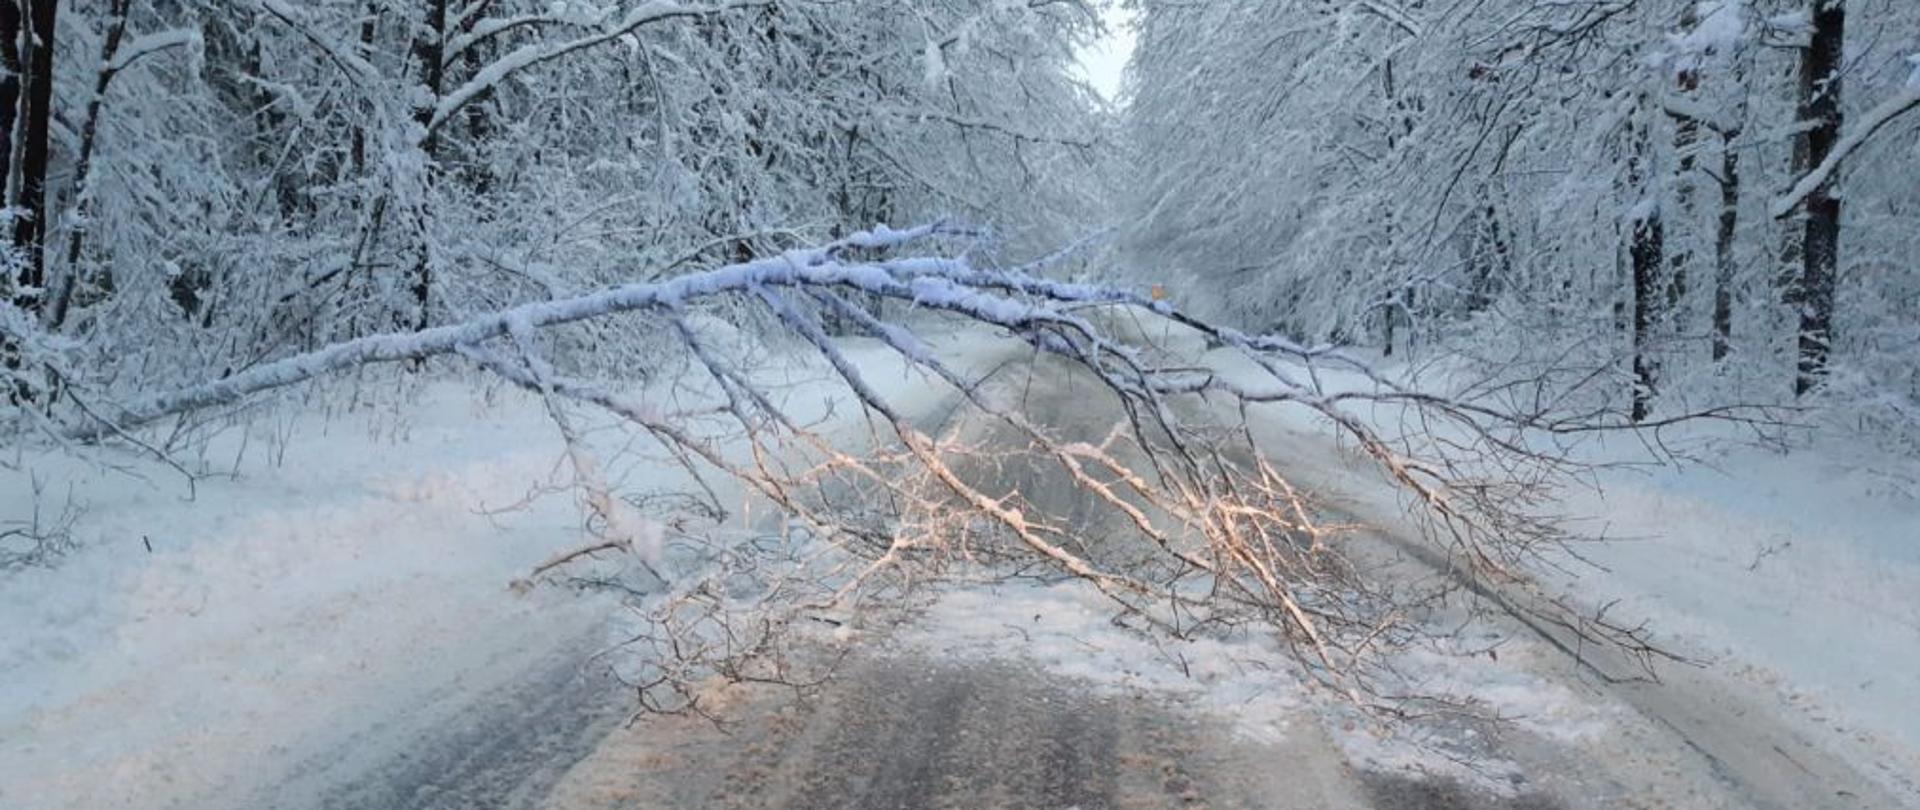 Widoczne powalone drzewo na zaśnieżonej drodze blokujące przejazd